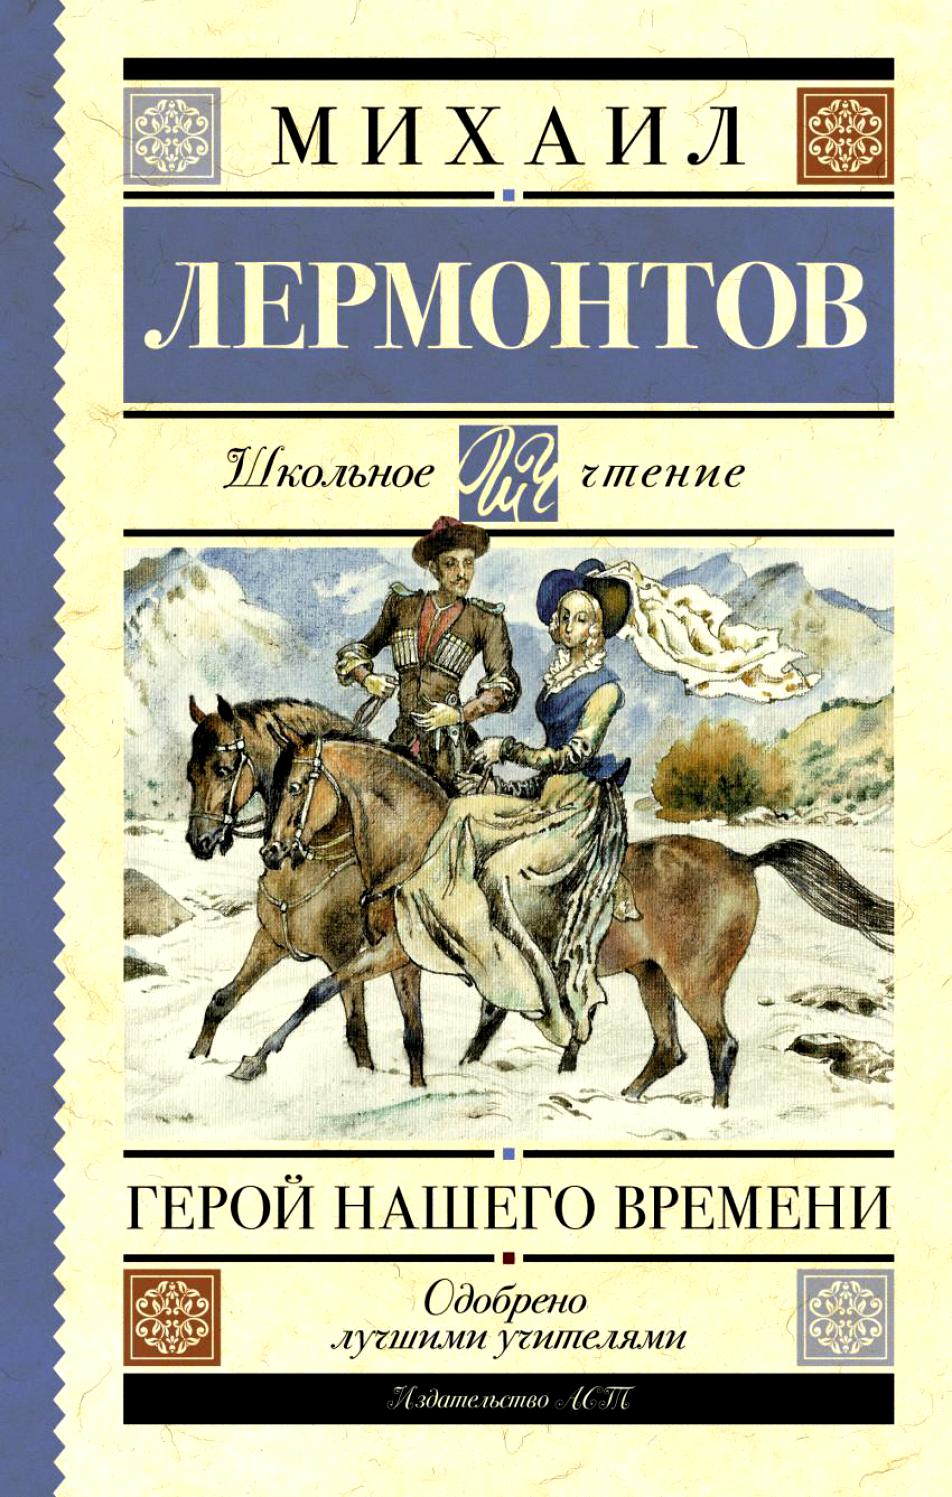 Сочинение по теме Женщины и лошади в романе М.Ю.Лермонтова «Герой нашего времени»